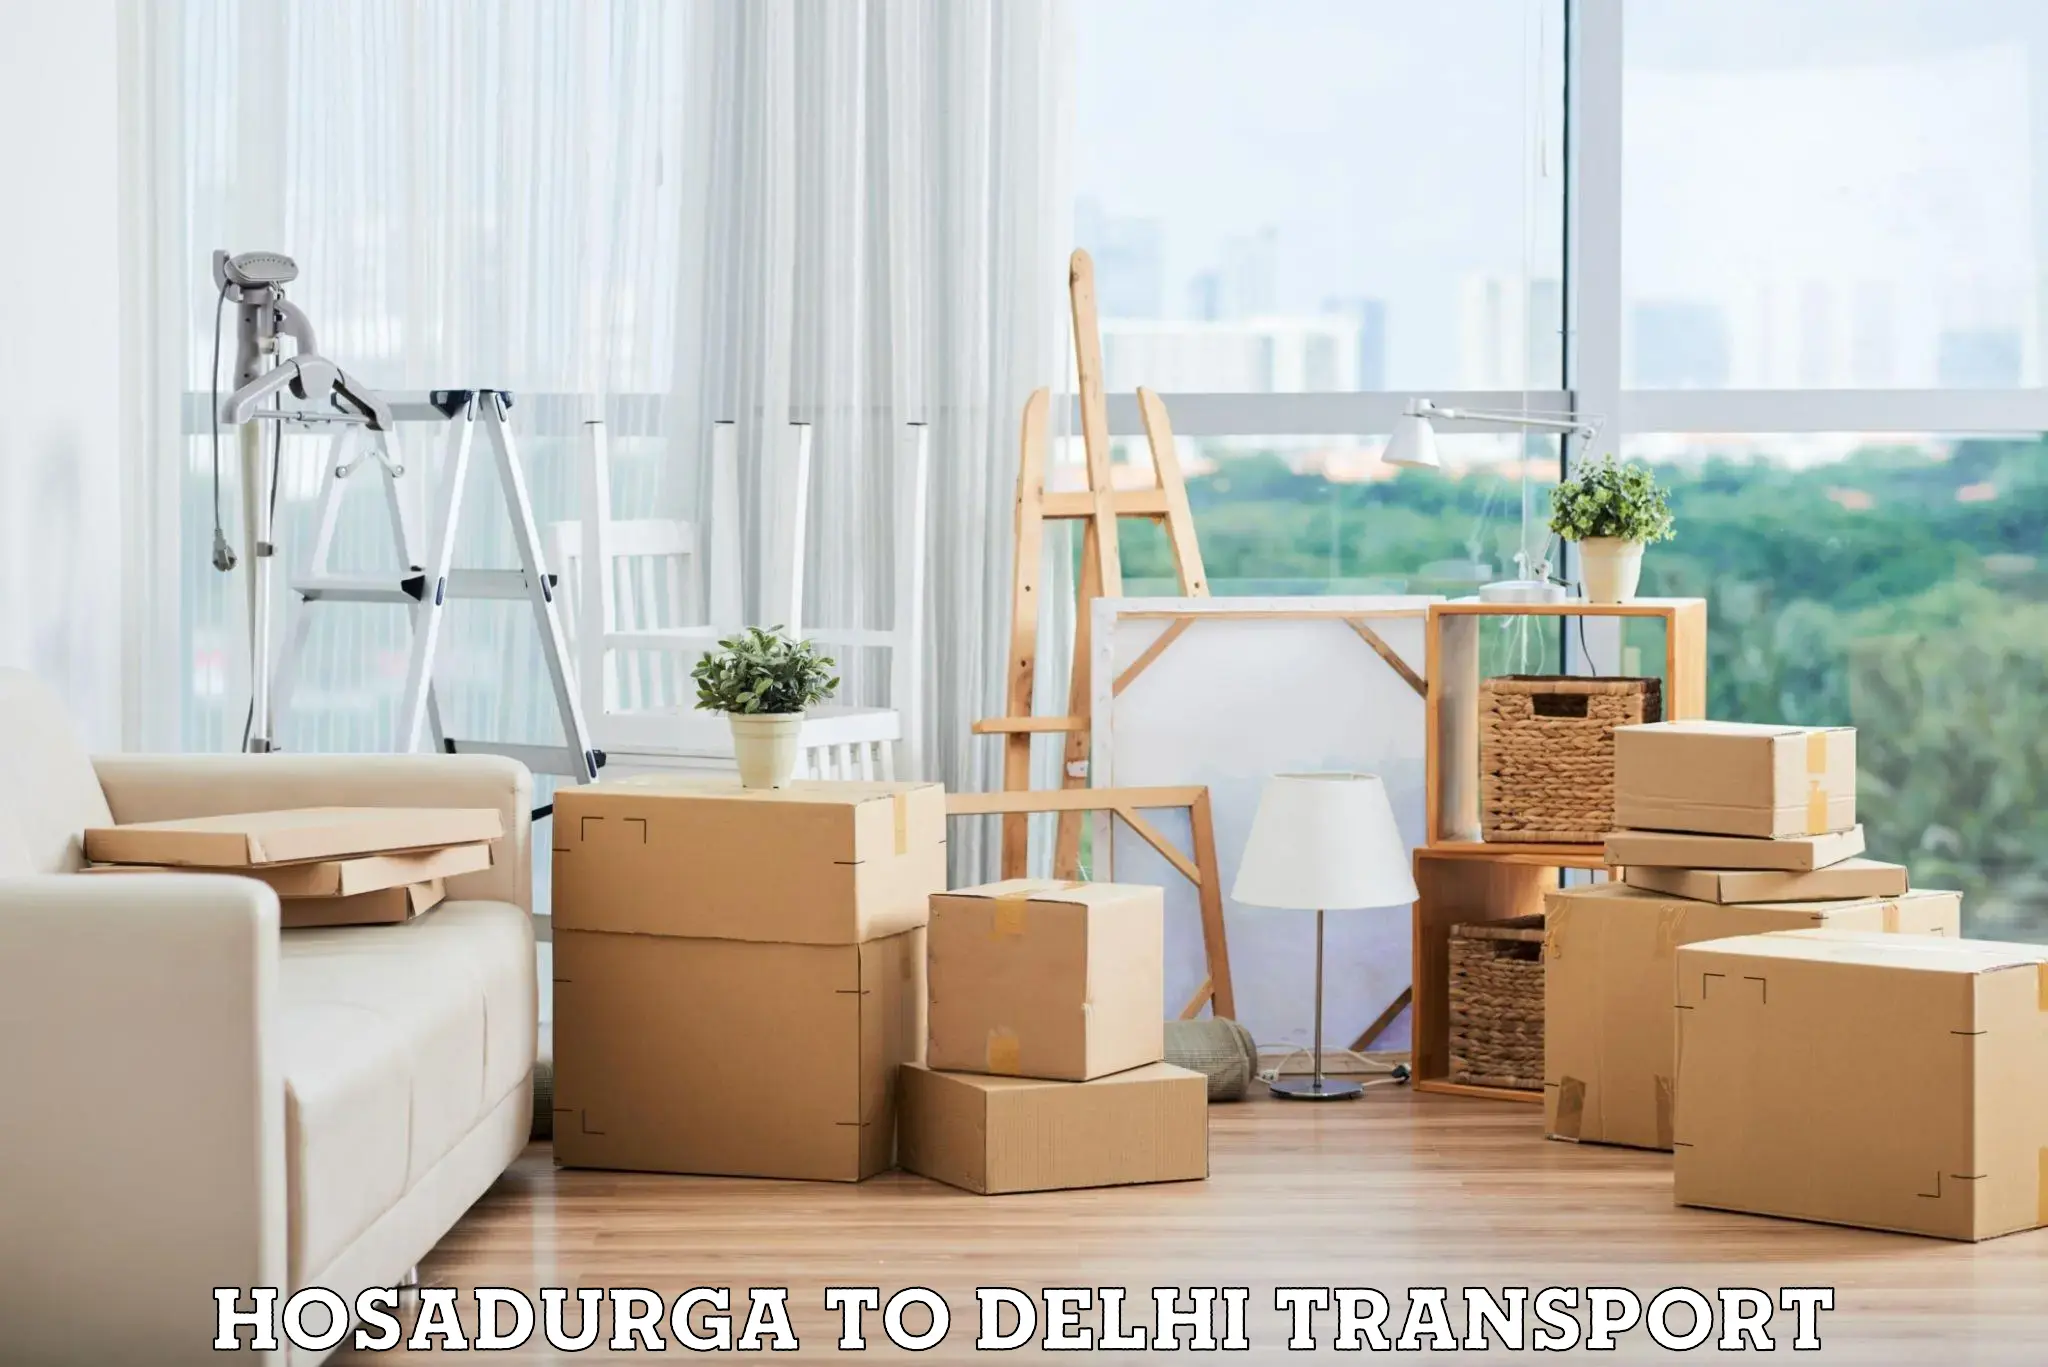 Express transport services Hosadurga to Delhi Technological University DTU